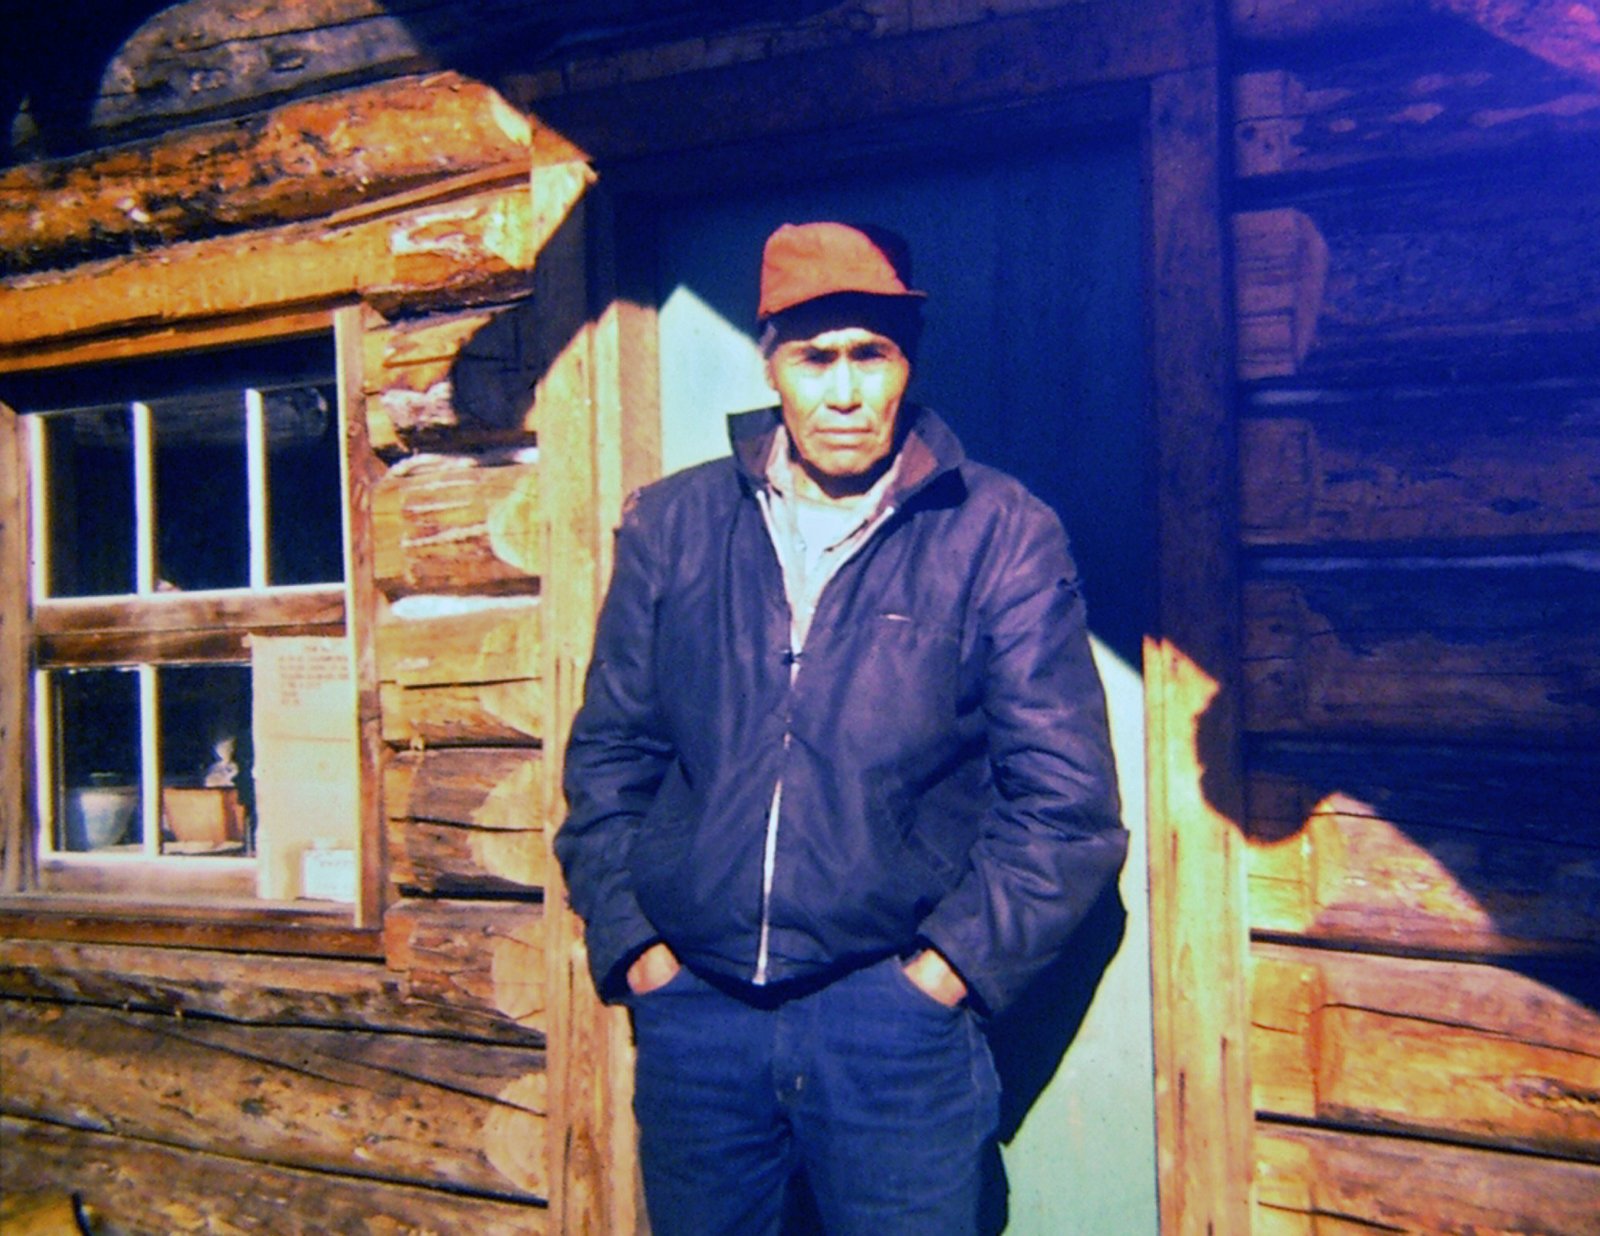 Andrew Bob outside Brian’s log cabin, June 1972.